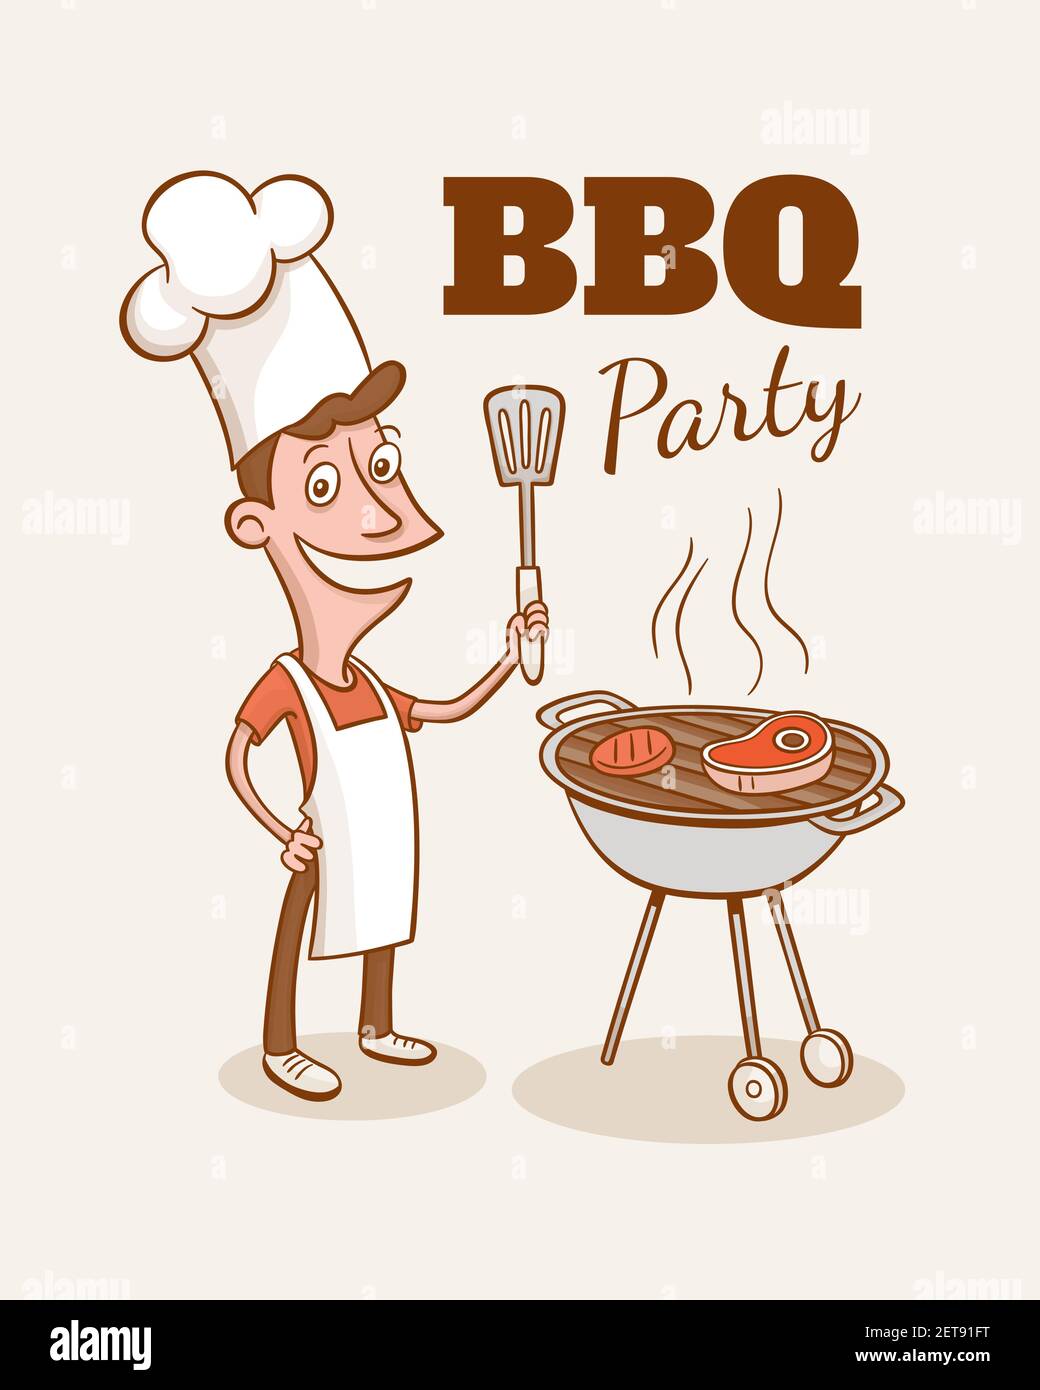 Illustration de fête barbecue vintage. Un smily homme cuisant un steak et  un hamburger dans un barbecue. Illustration vectorielle de style dessin  animé Image Vectorielle Stock - Alamy